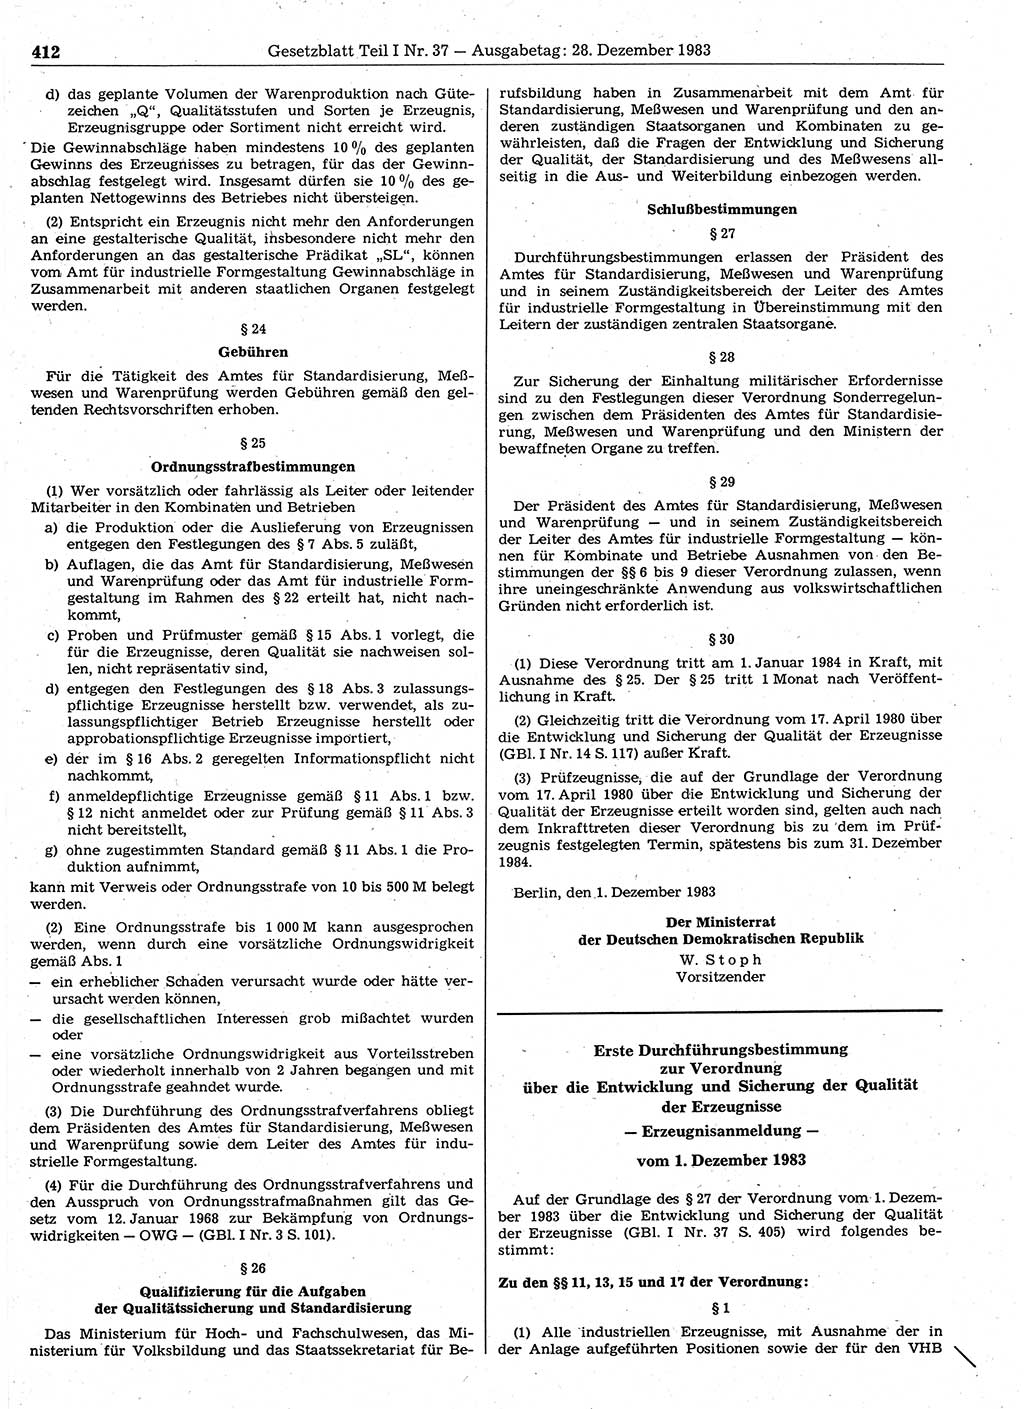 Gesetzblatt (GBl.) der Deutschen Demokratischen Republik (DDR) Teil Ⅰ 1983, Seite 412 (GBl. DDR Ⅰ 1983, S. 412)